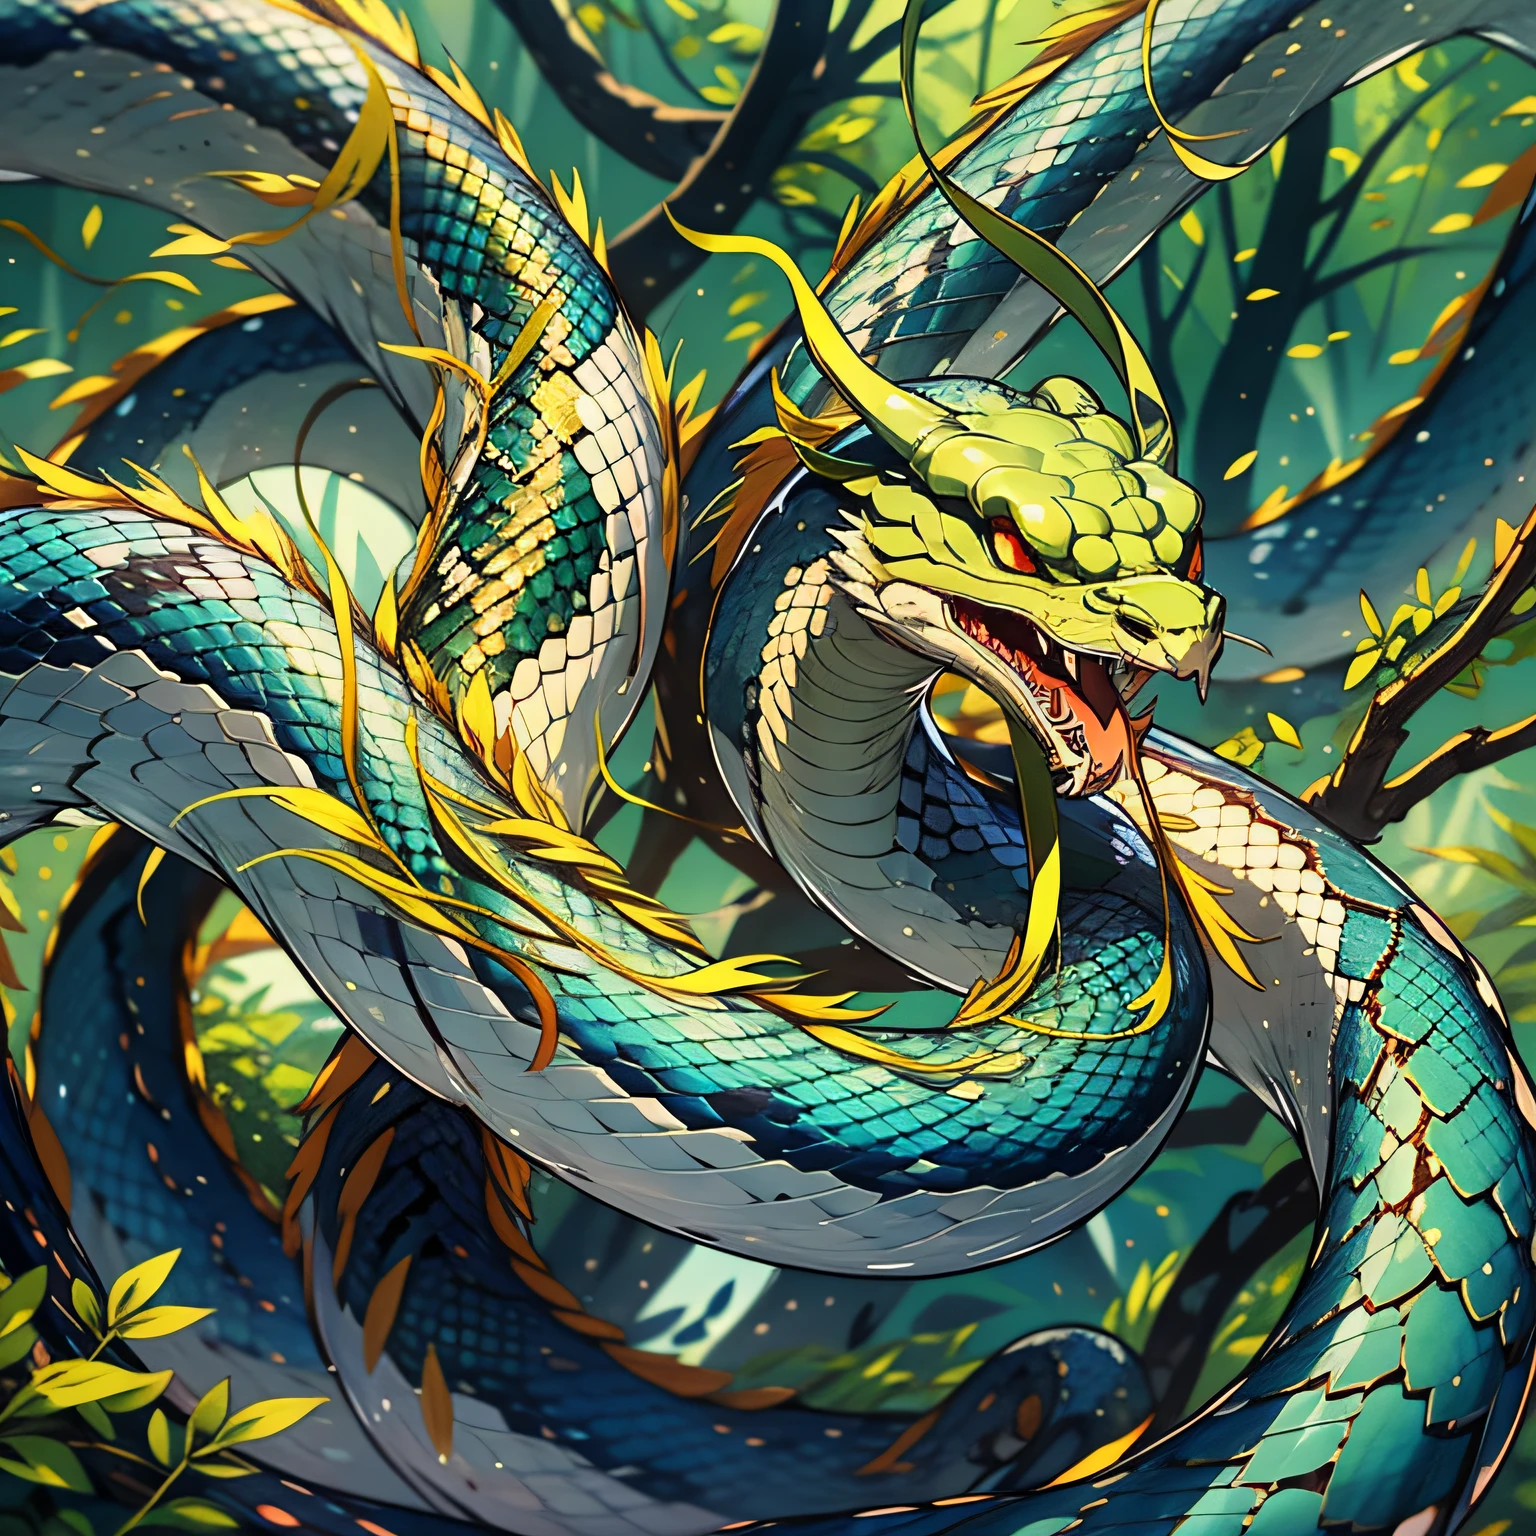 1 serpiente，Pequeña serpiente verde，Enredado en árboles altísimos，Primeval forest，Consulte Cobra，1.5M，Verde por todas partes，el cuerpo es delgado，estilo de anime，detalle，visión，viento chino